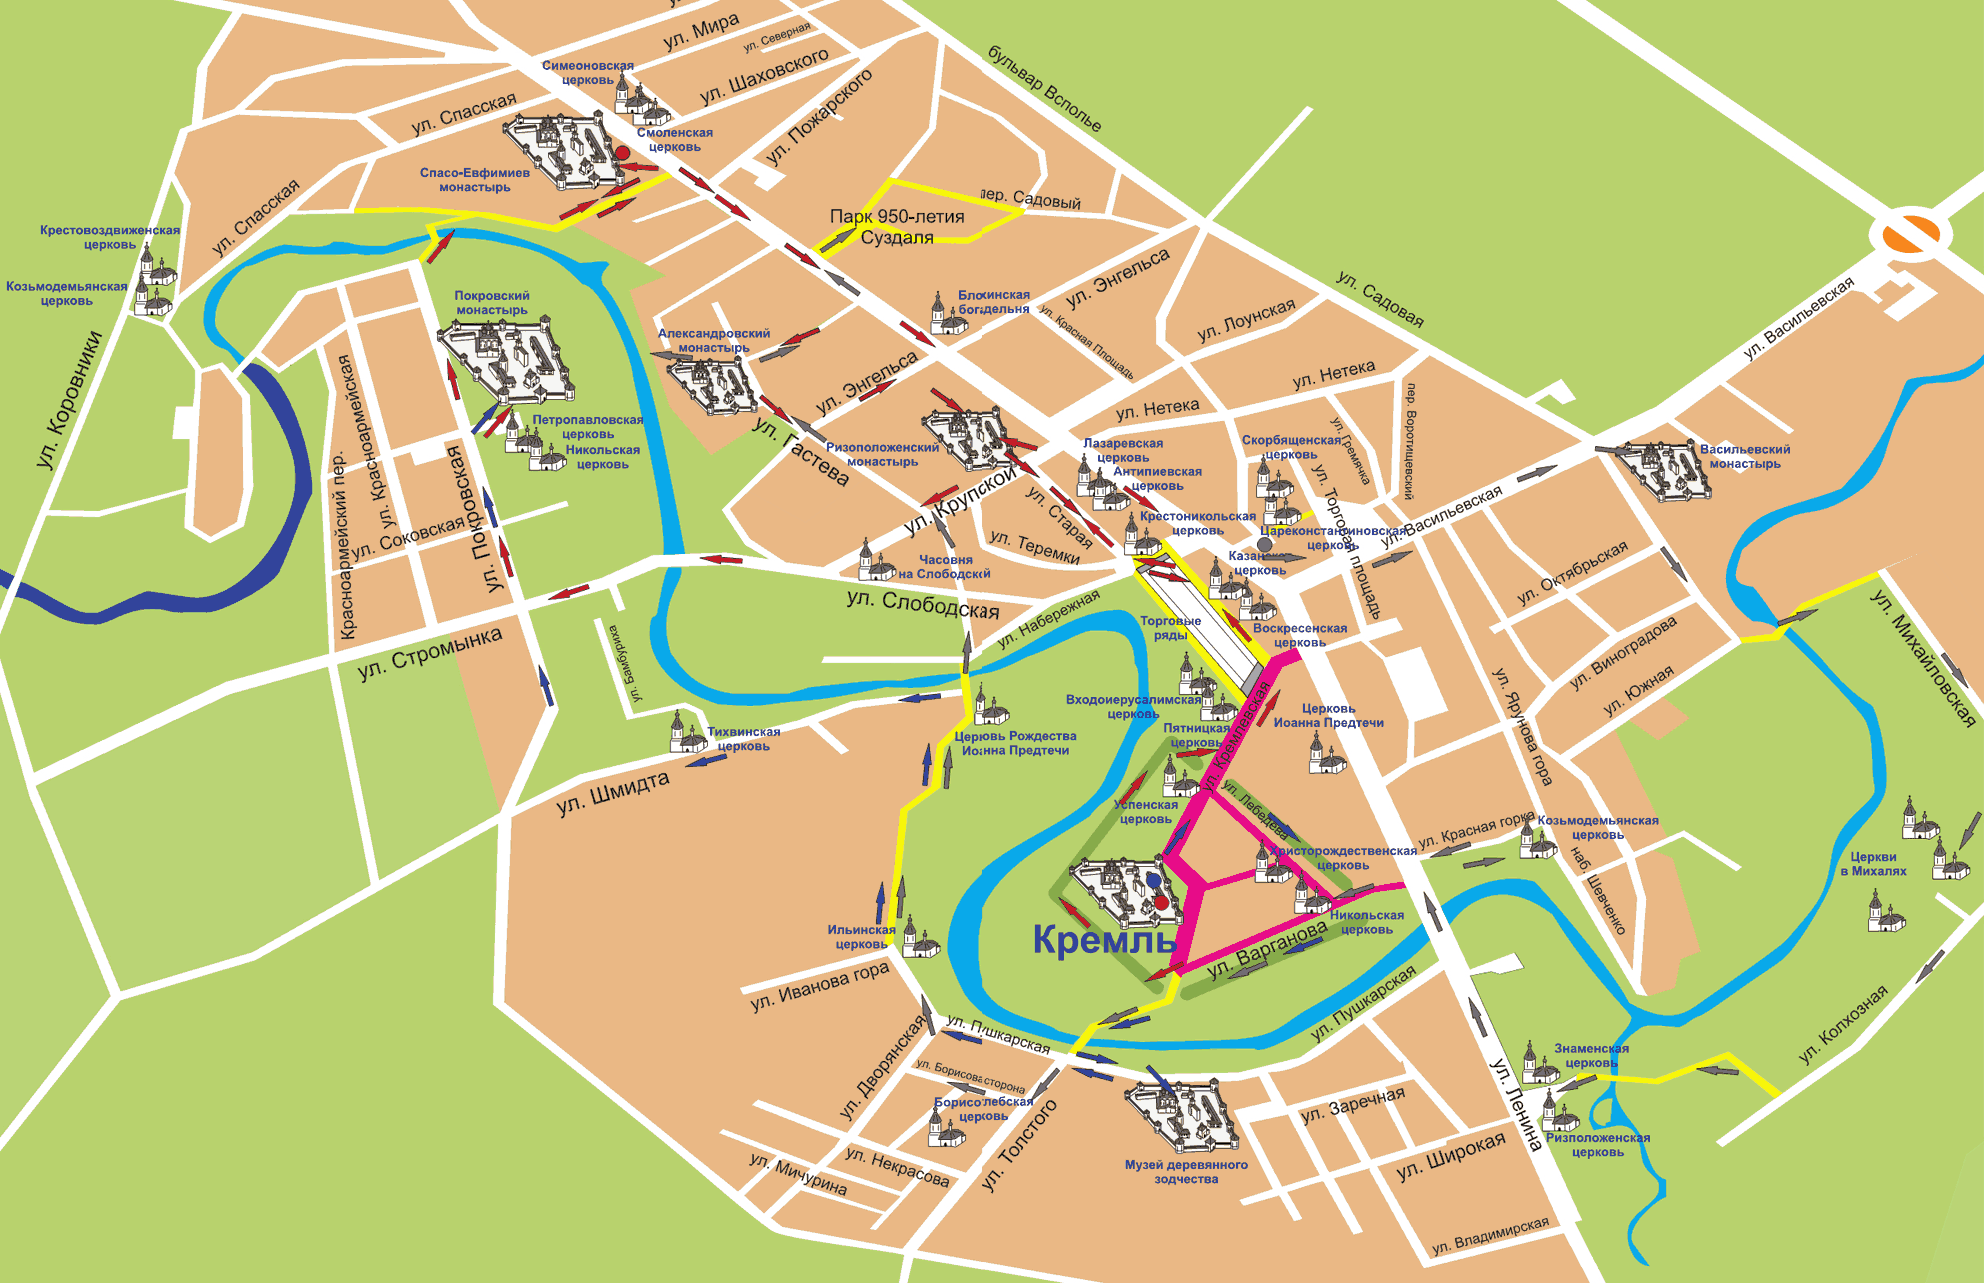 Интерактивная карта архитектурных памятников Суздаля